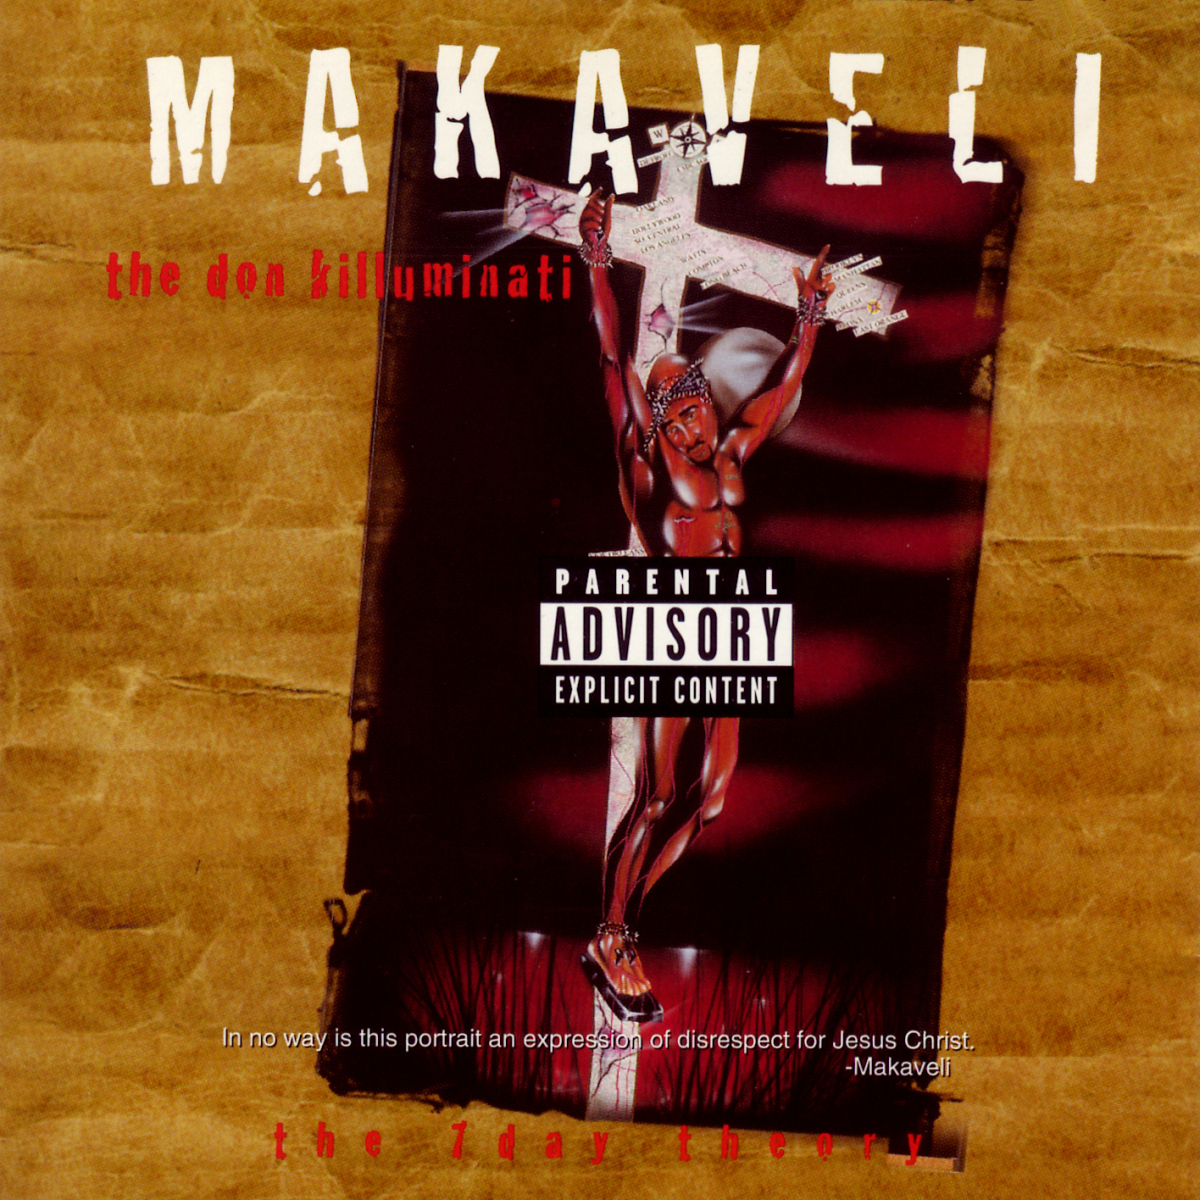 Makaveli – The Don Killuminati (The 7 Day Theory)